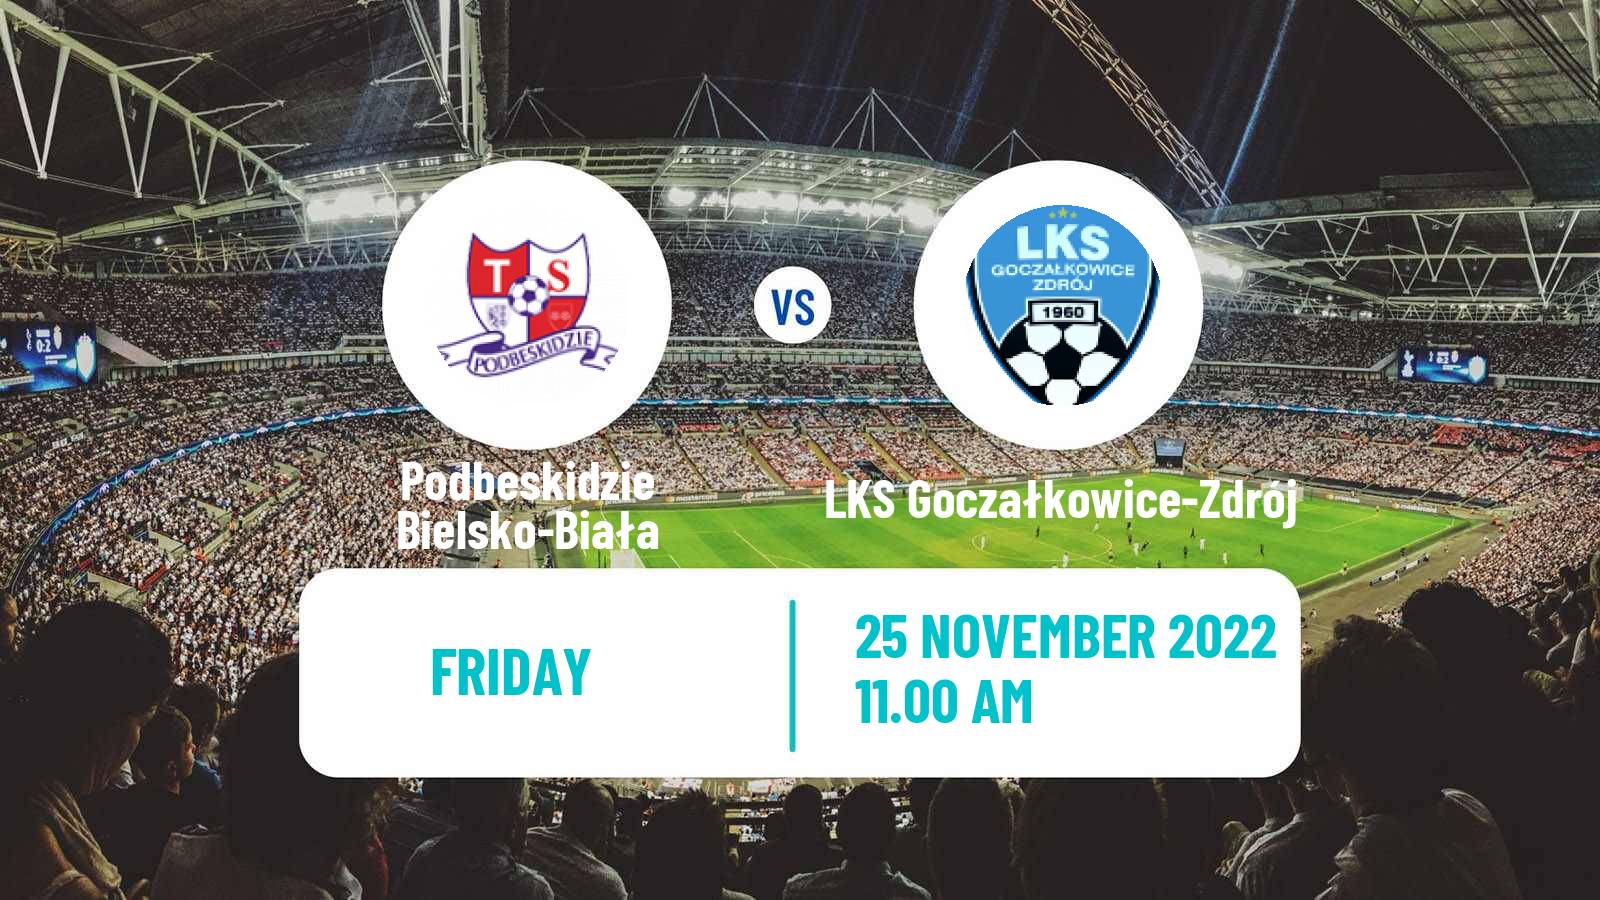 Soccer Club Friendly Podbeskidzie Bielsko-Biała - LKS Goczałkowice-Zdrój